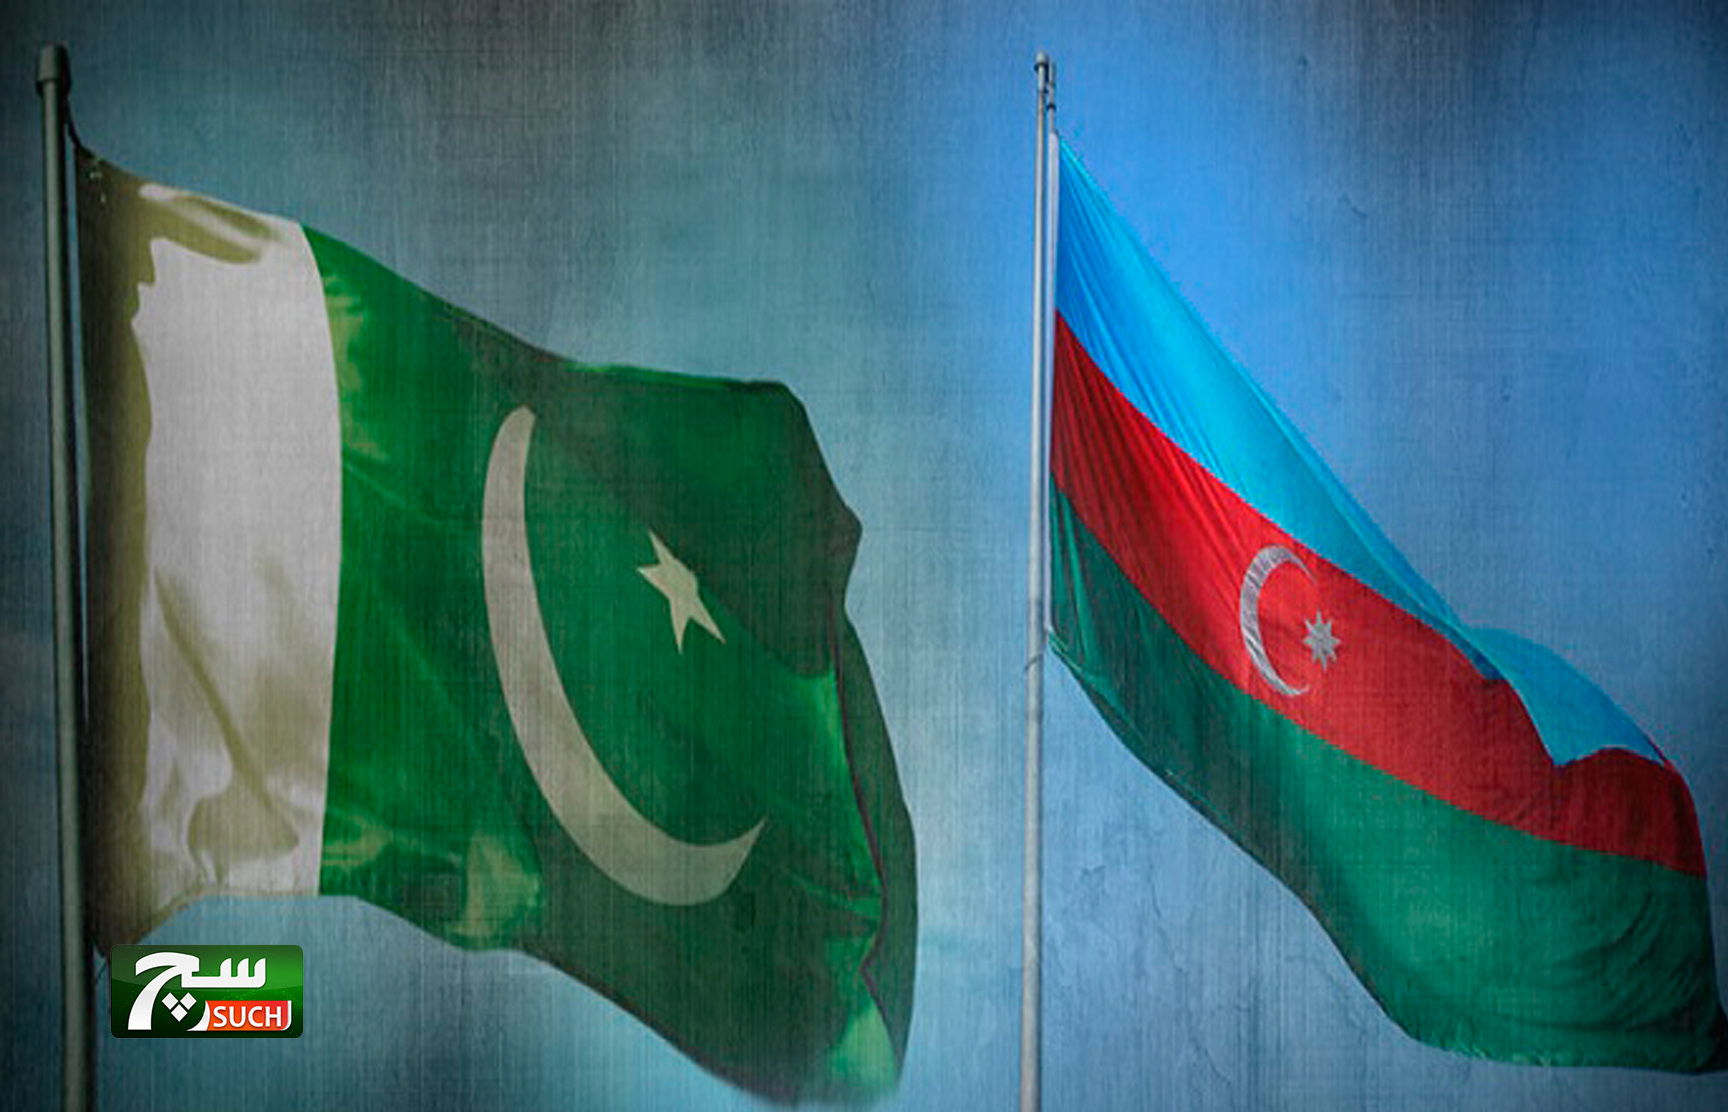 وزير الدفاع لآذربيجان سيقوم بزيارة باكستان بتاريخ 21 من مارس الجاري